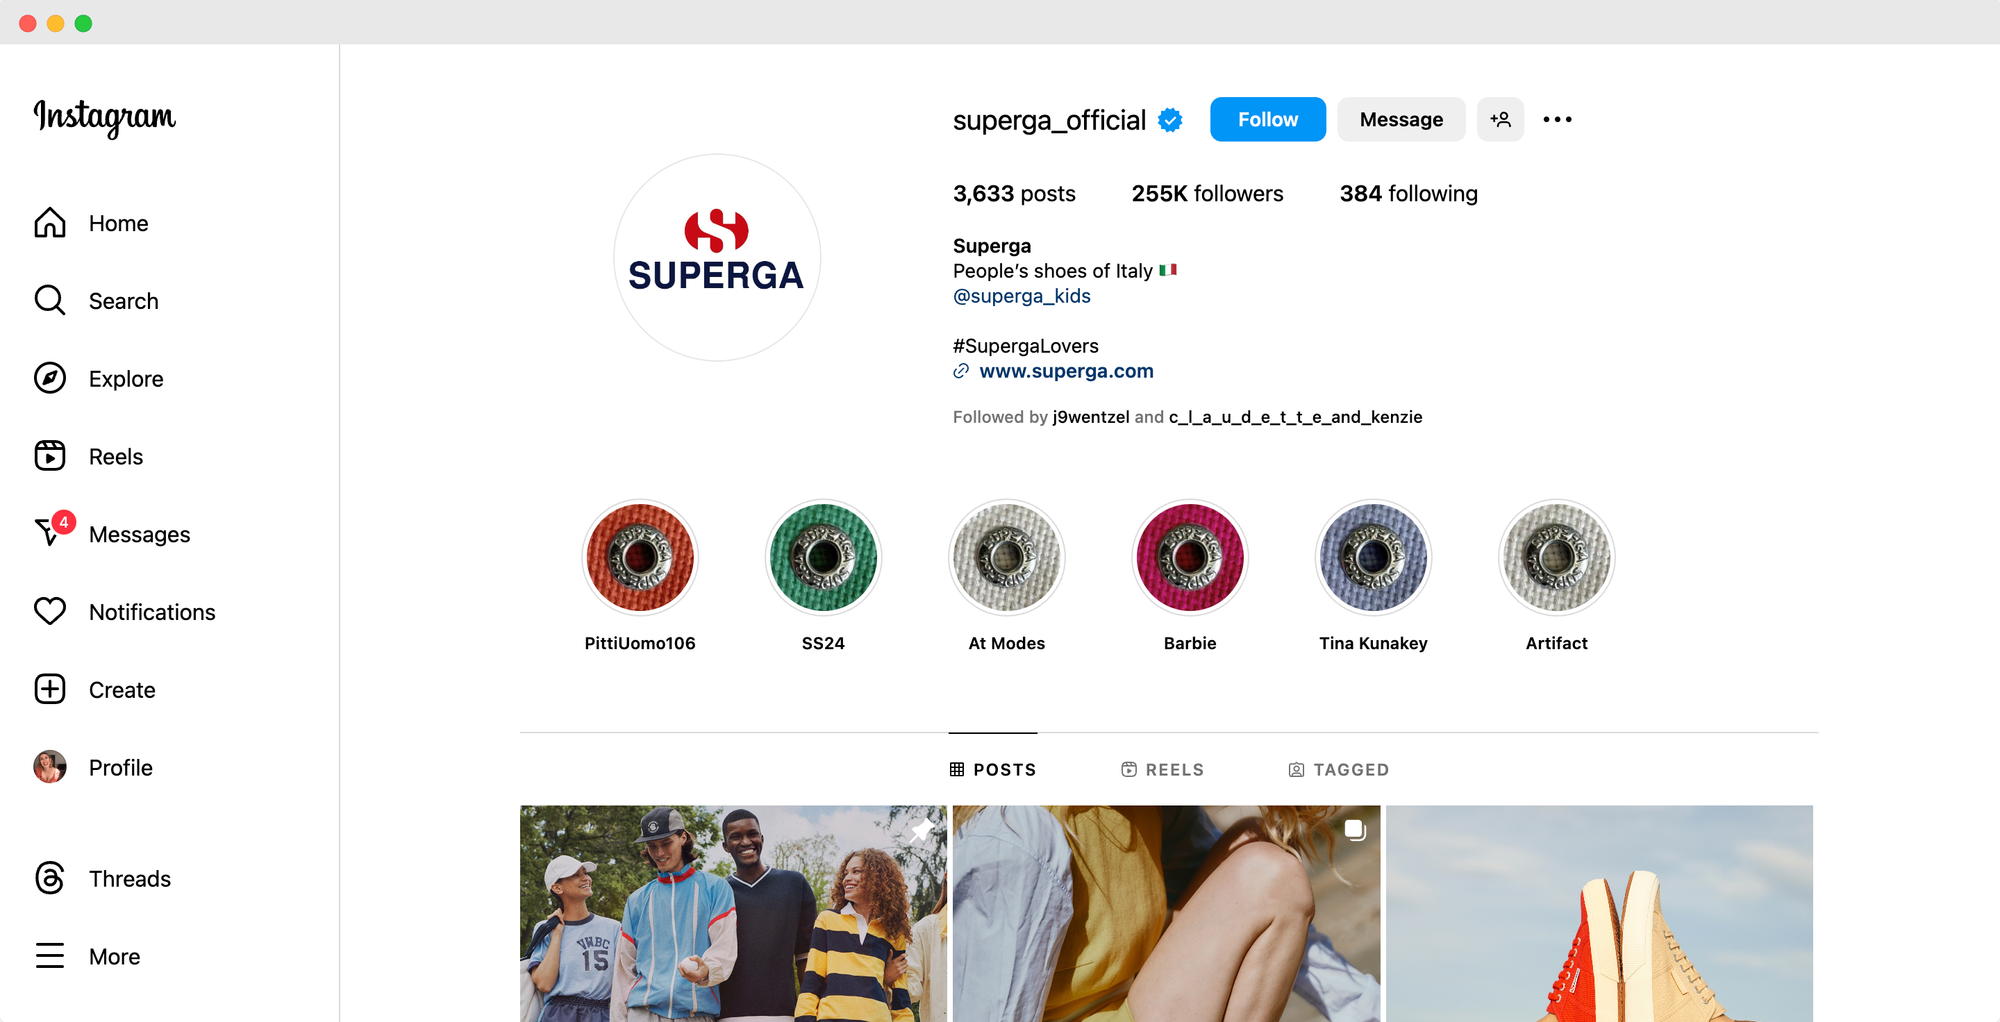 Superga's Instagram profile